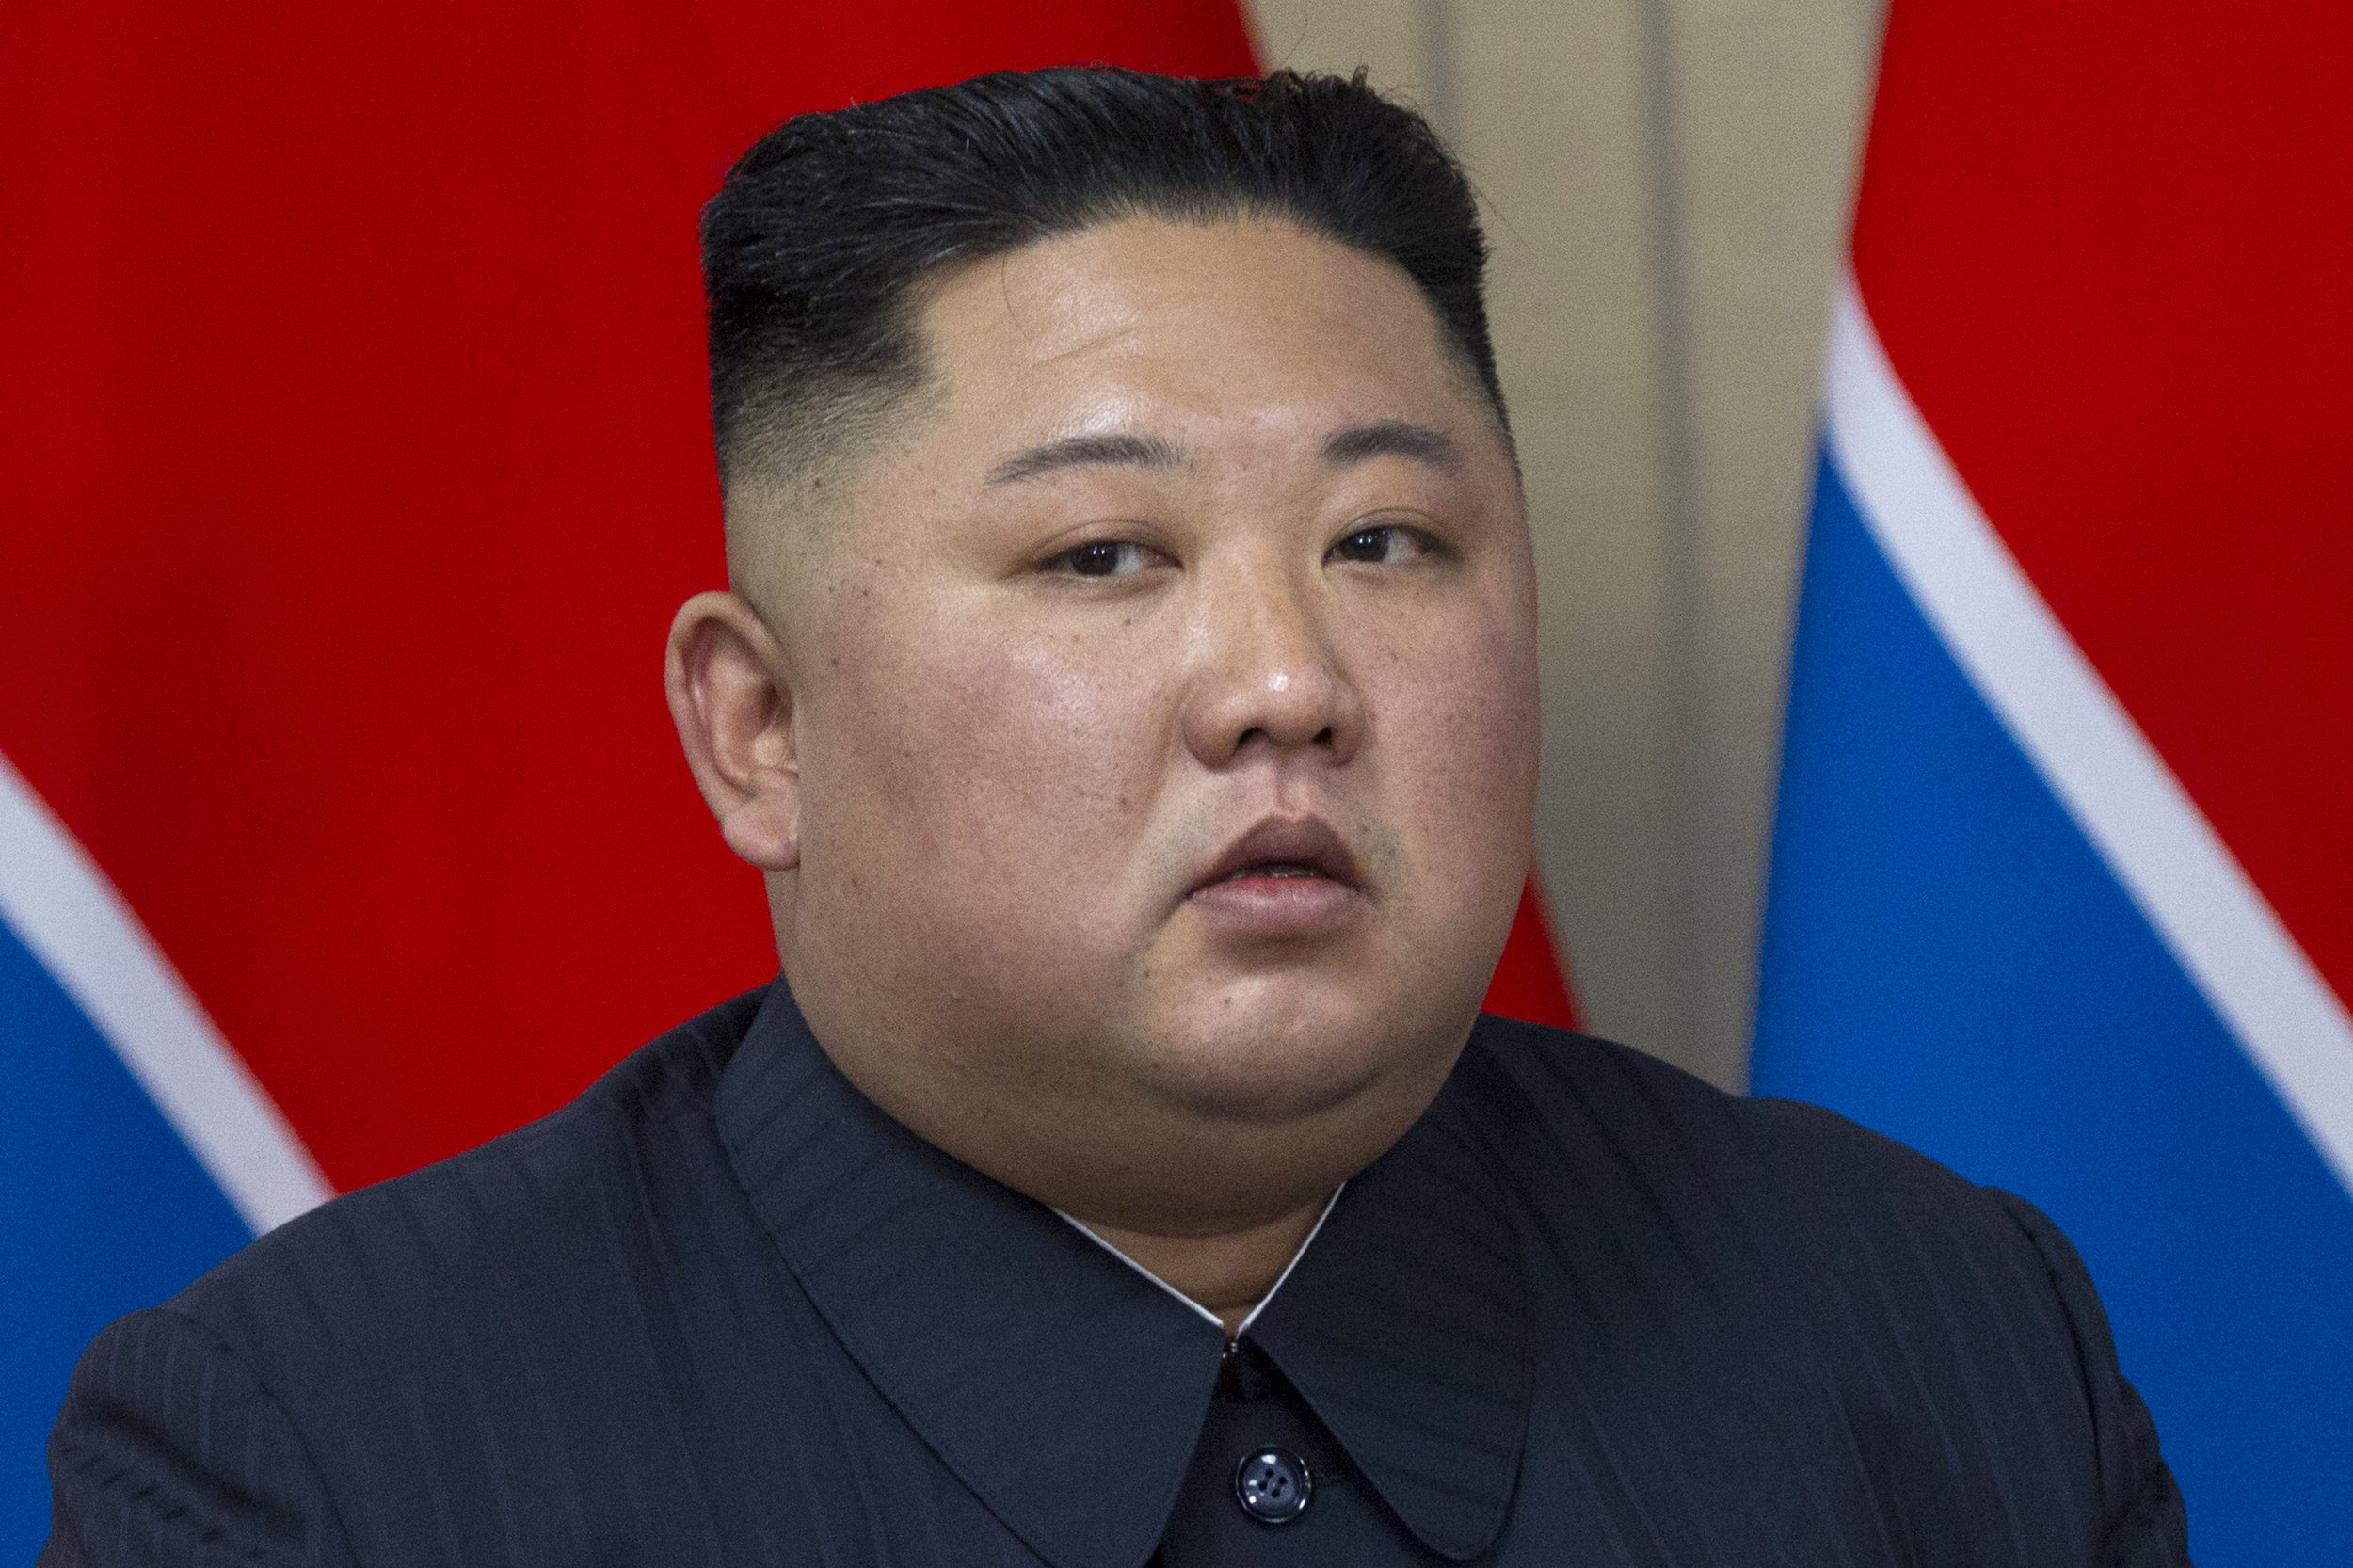 زعيم كوريا الشمالية: سنواصل تطوير "قدرات هجومية قوية" وتعزيز قواتها الاستراتيجية